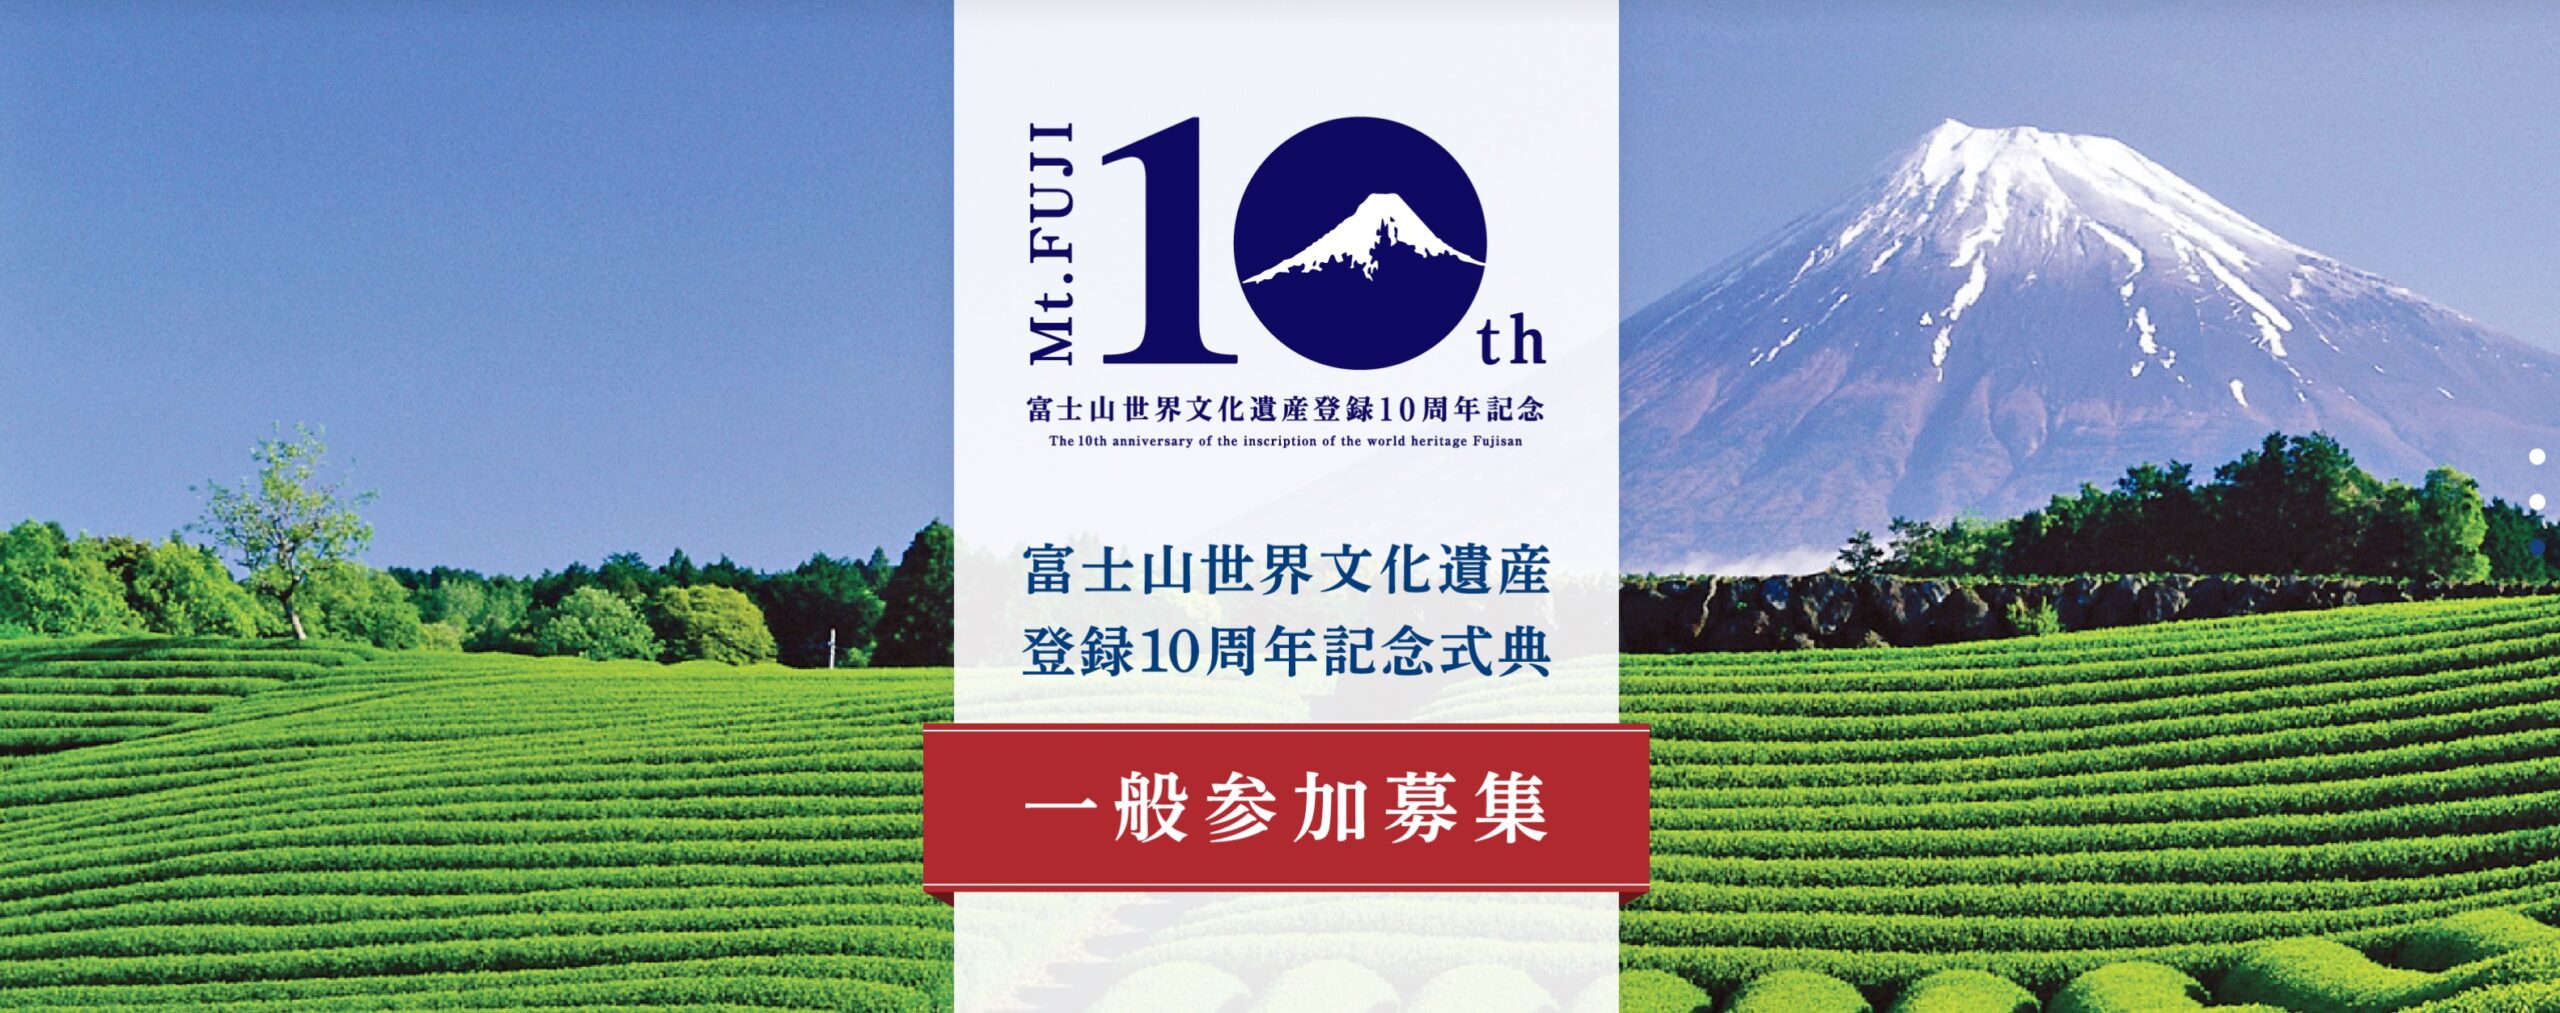 富士山世界文化遺産登録10周年記念式典